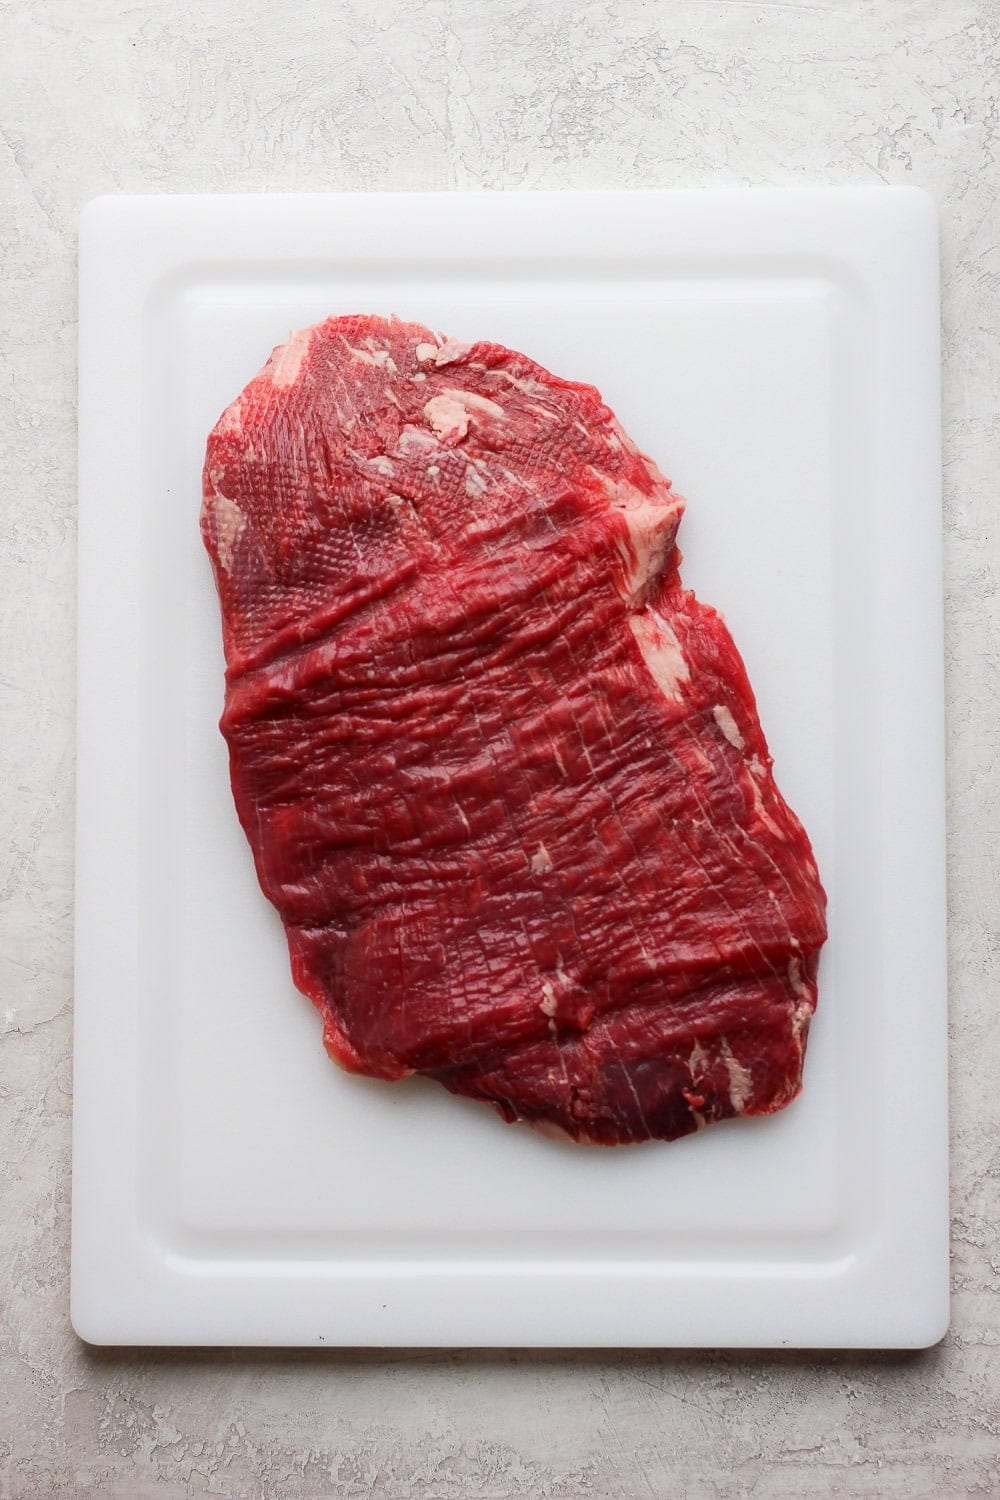 Raw flank steak on a cutting board.